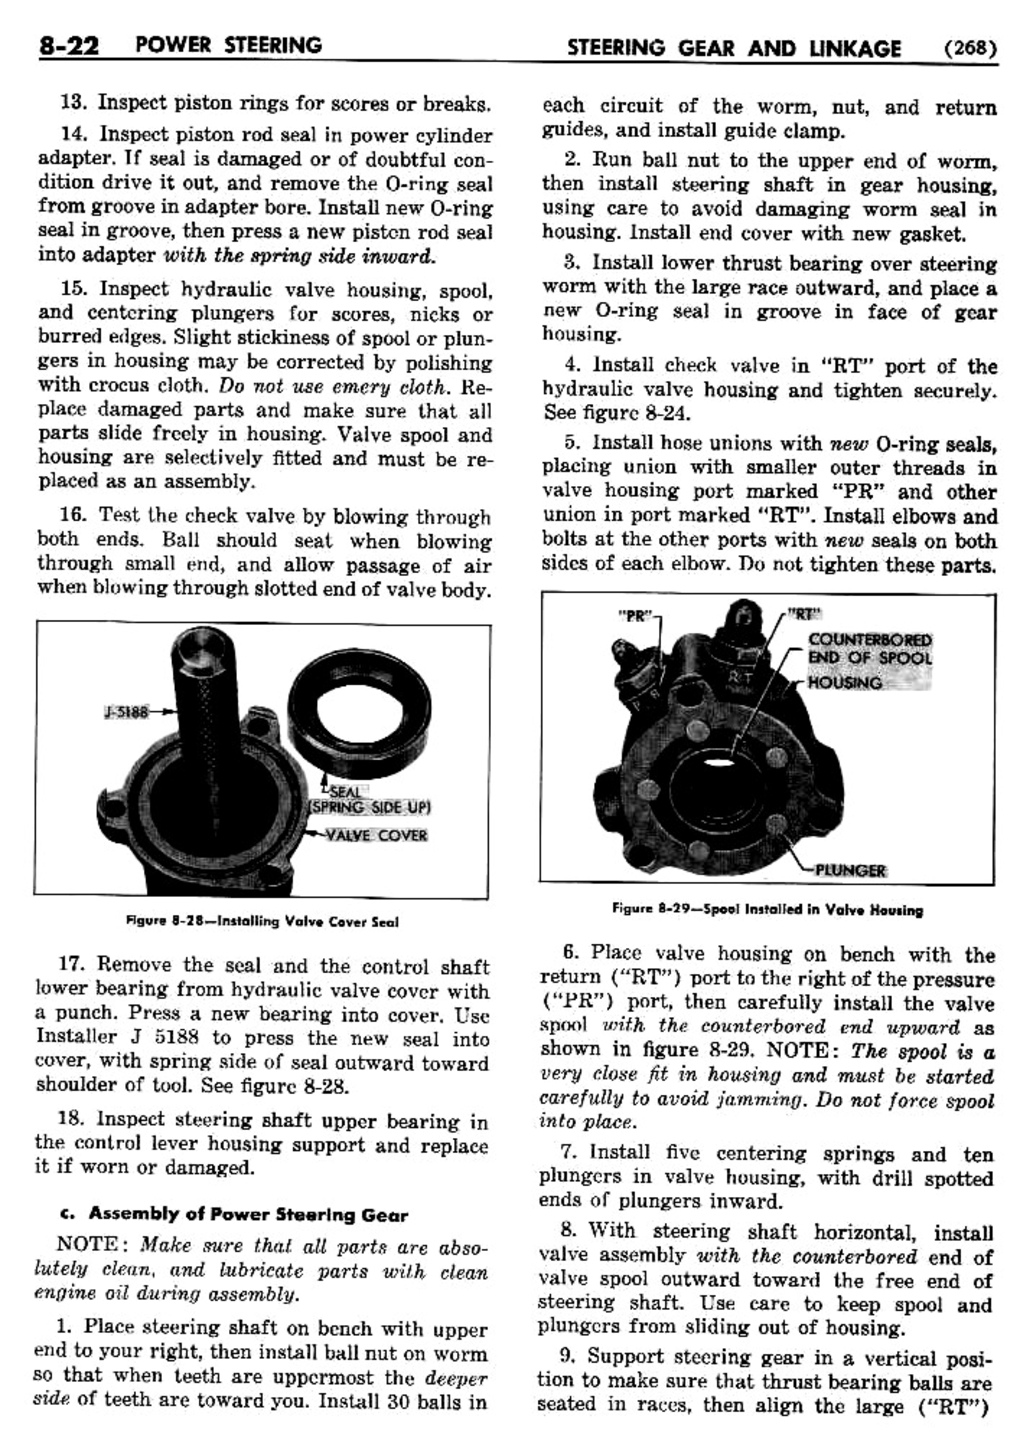 n_09 1955 Buick Shop Manual - Steering-022-022.jpg